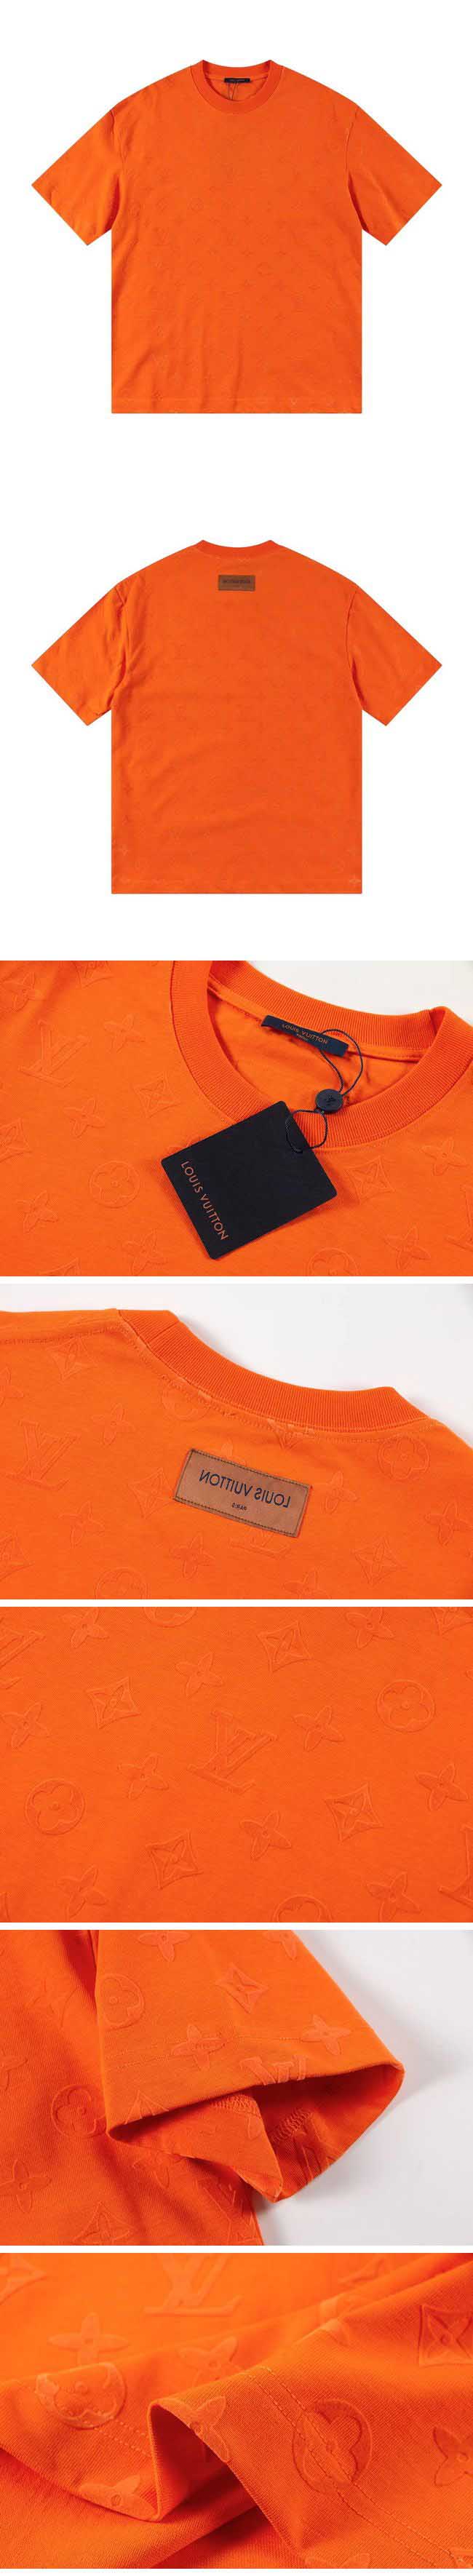 Louis Vuitton Monogram Design Tee ルイヴィトン モノグラム デザイン Tシャツ オレンジ